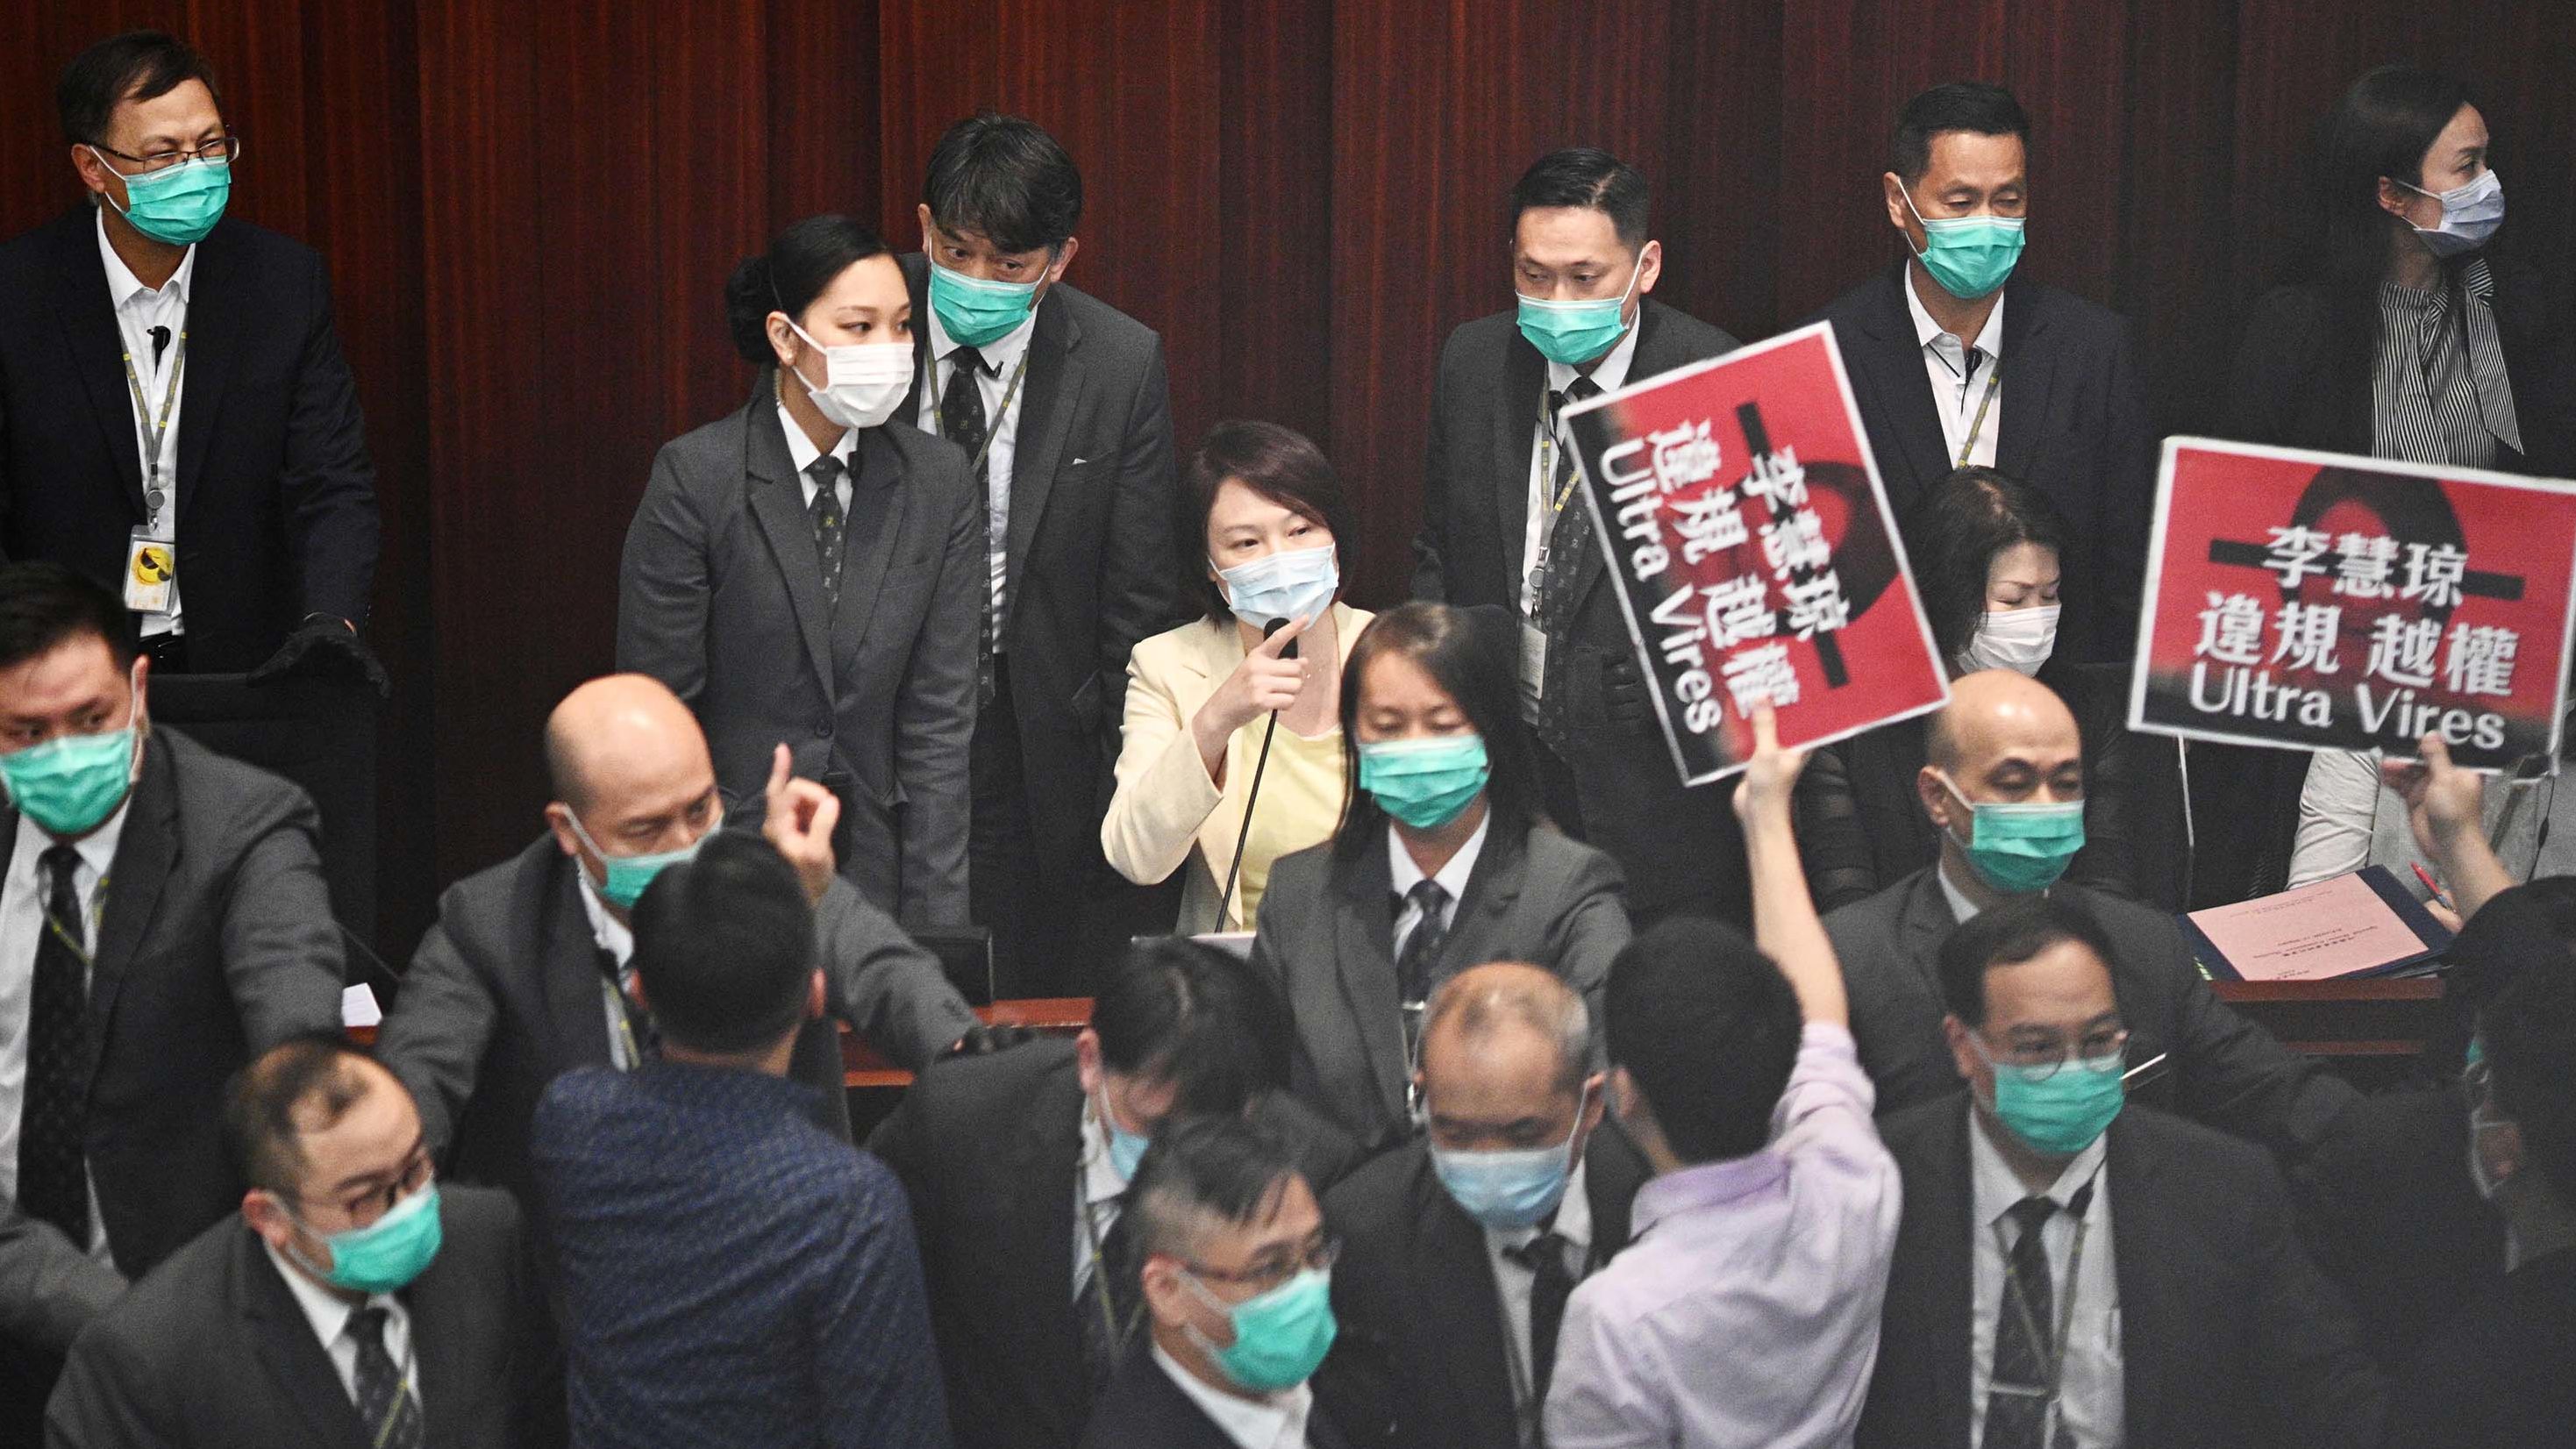 Pro-Beijing lawmaker Starry Lee, center, gestures towards pro-democracy lawmakers.